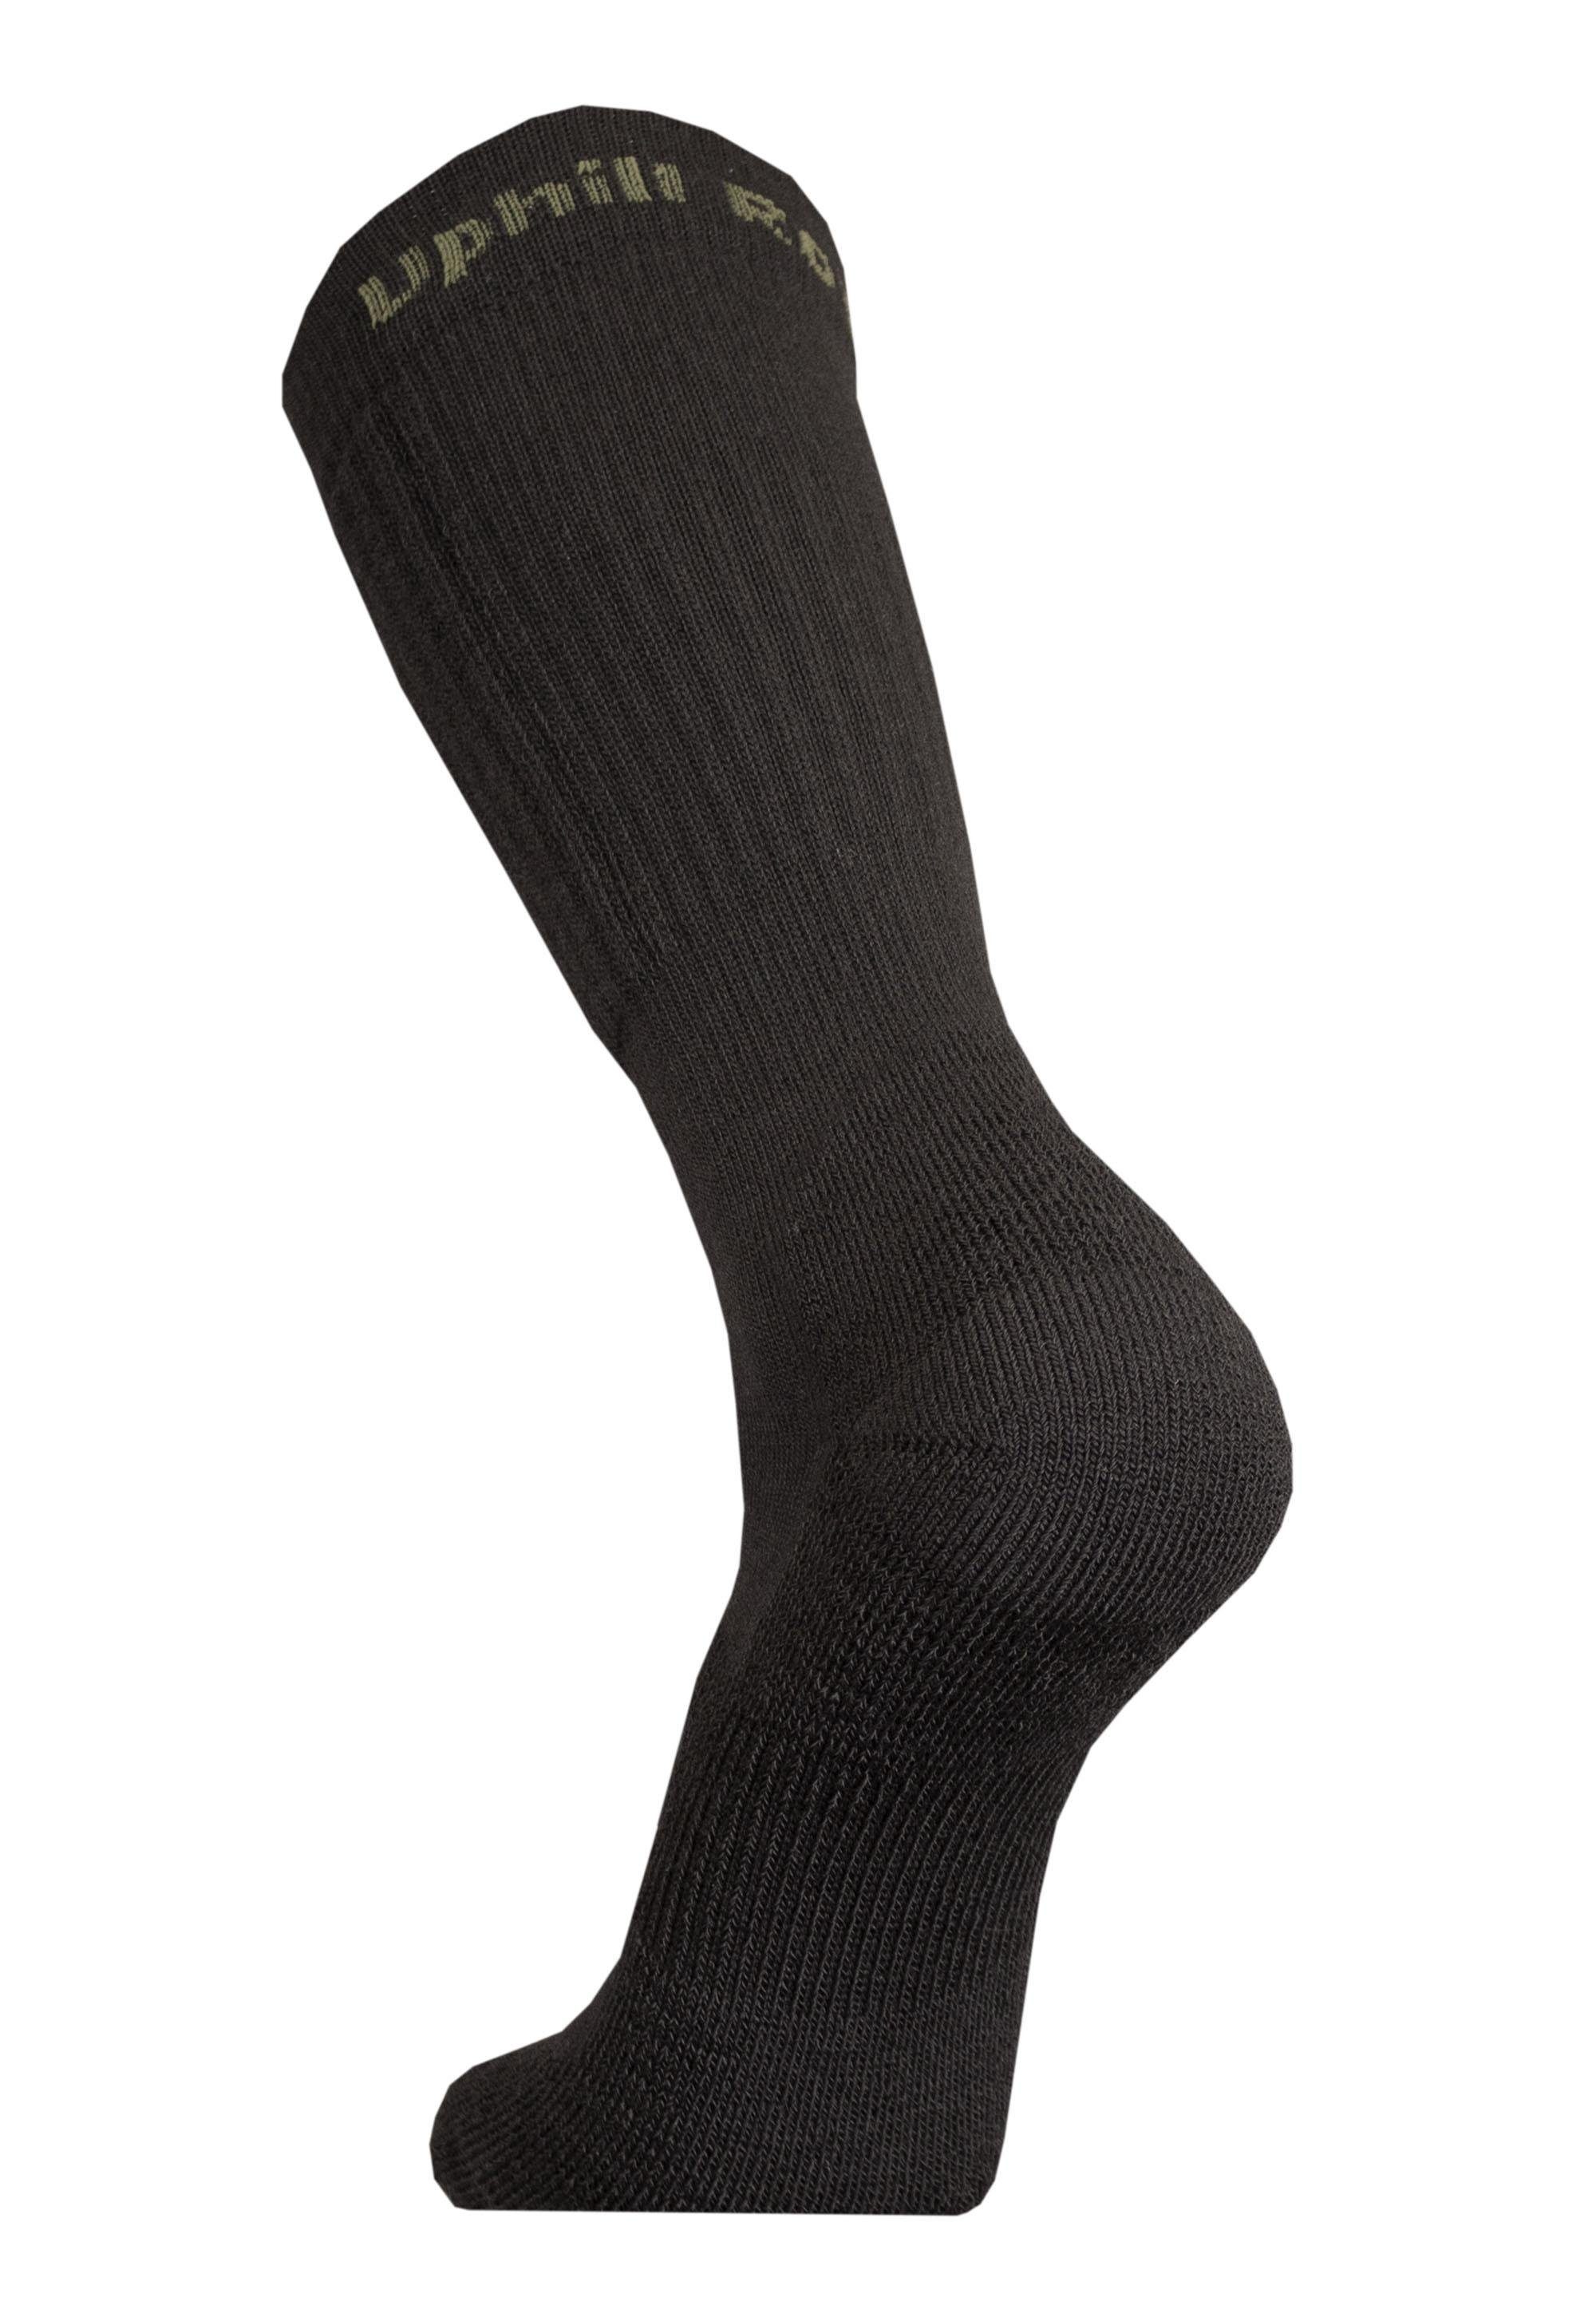 ROVA Struktur mehrlagiger UphillSport Socken mit schwarz